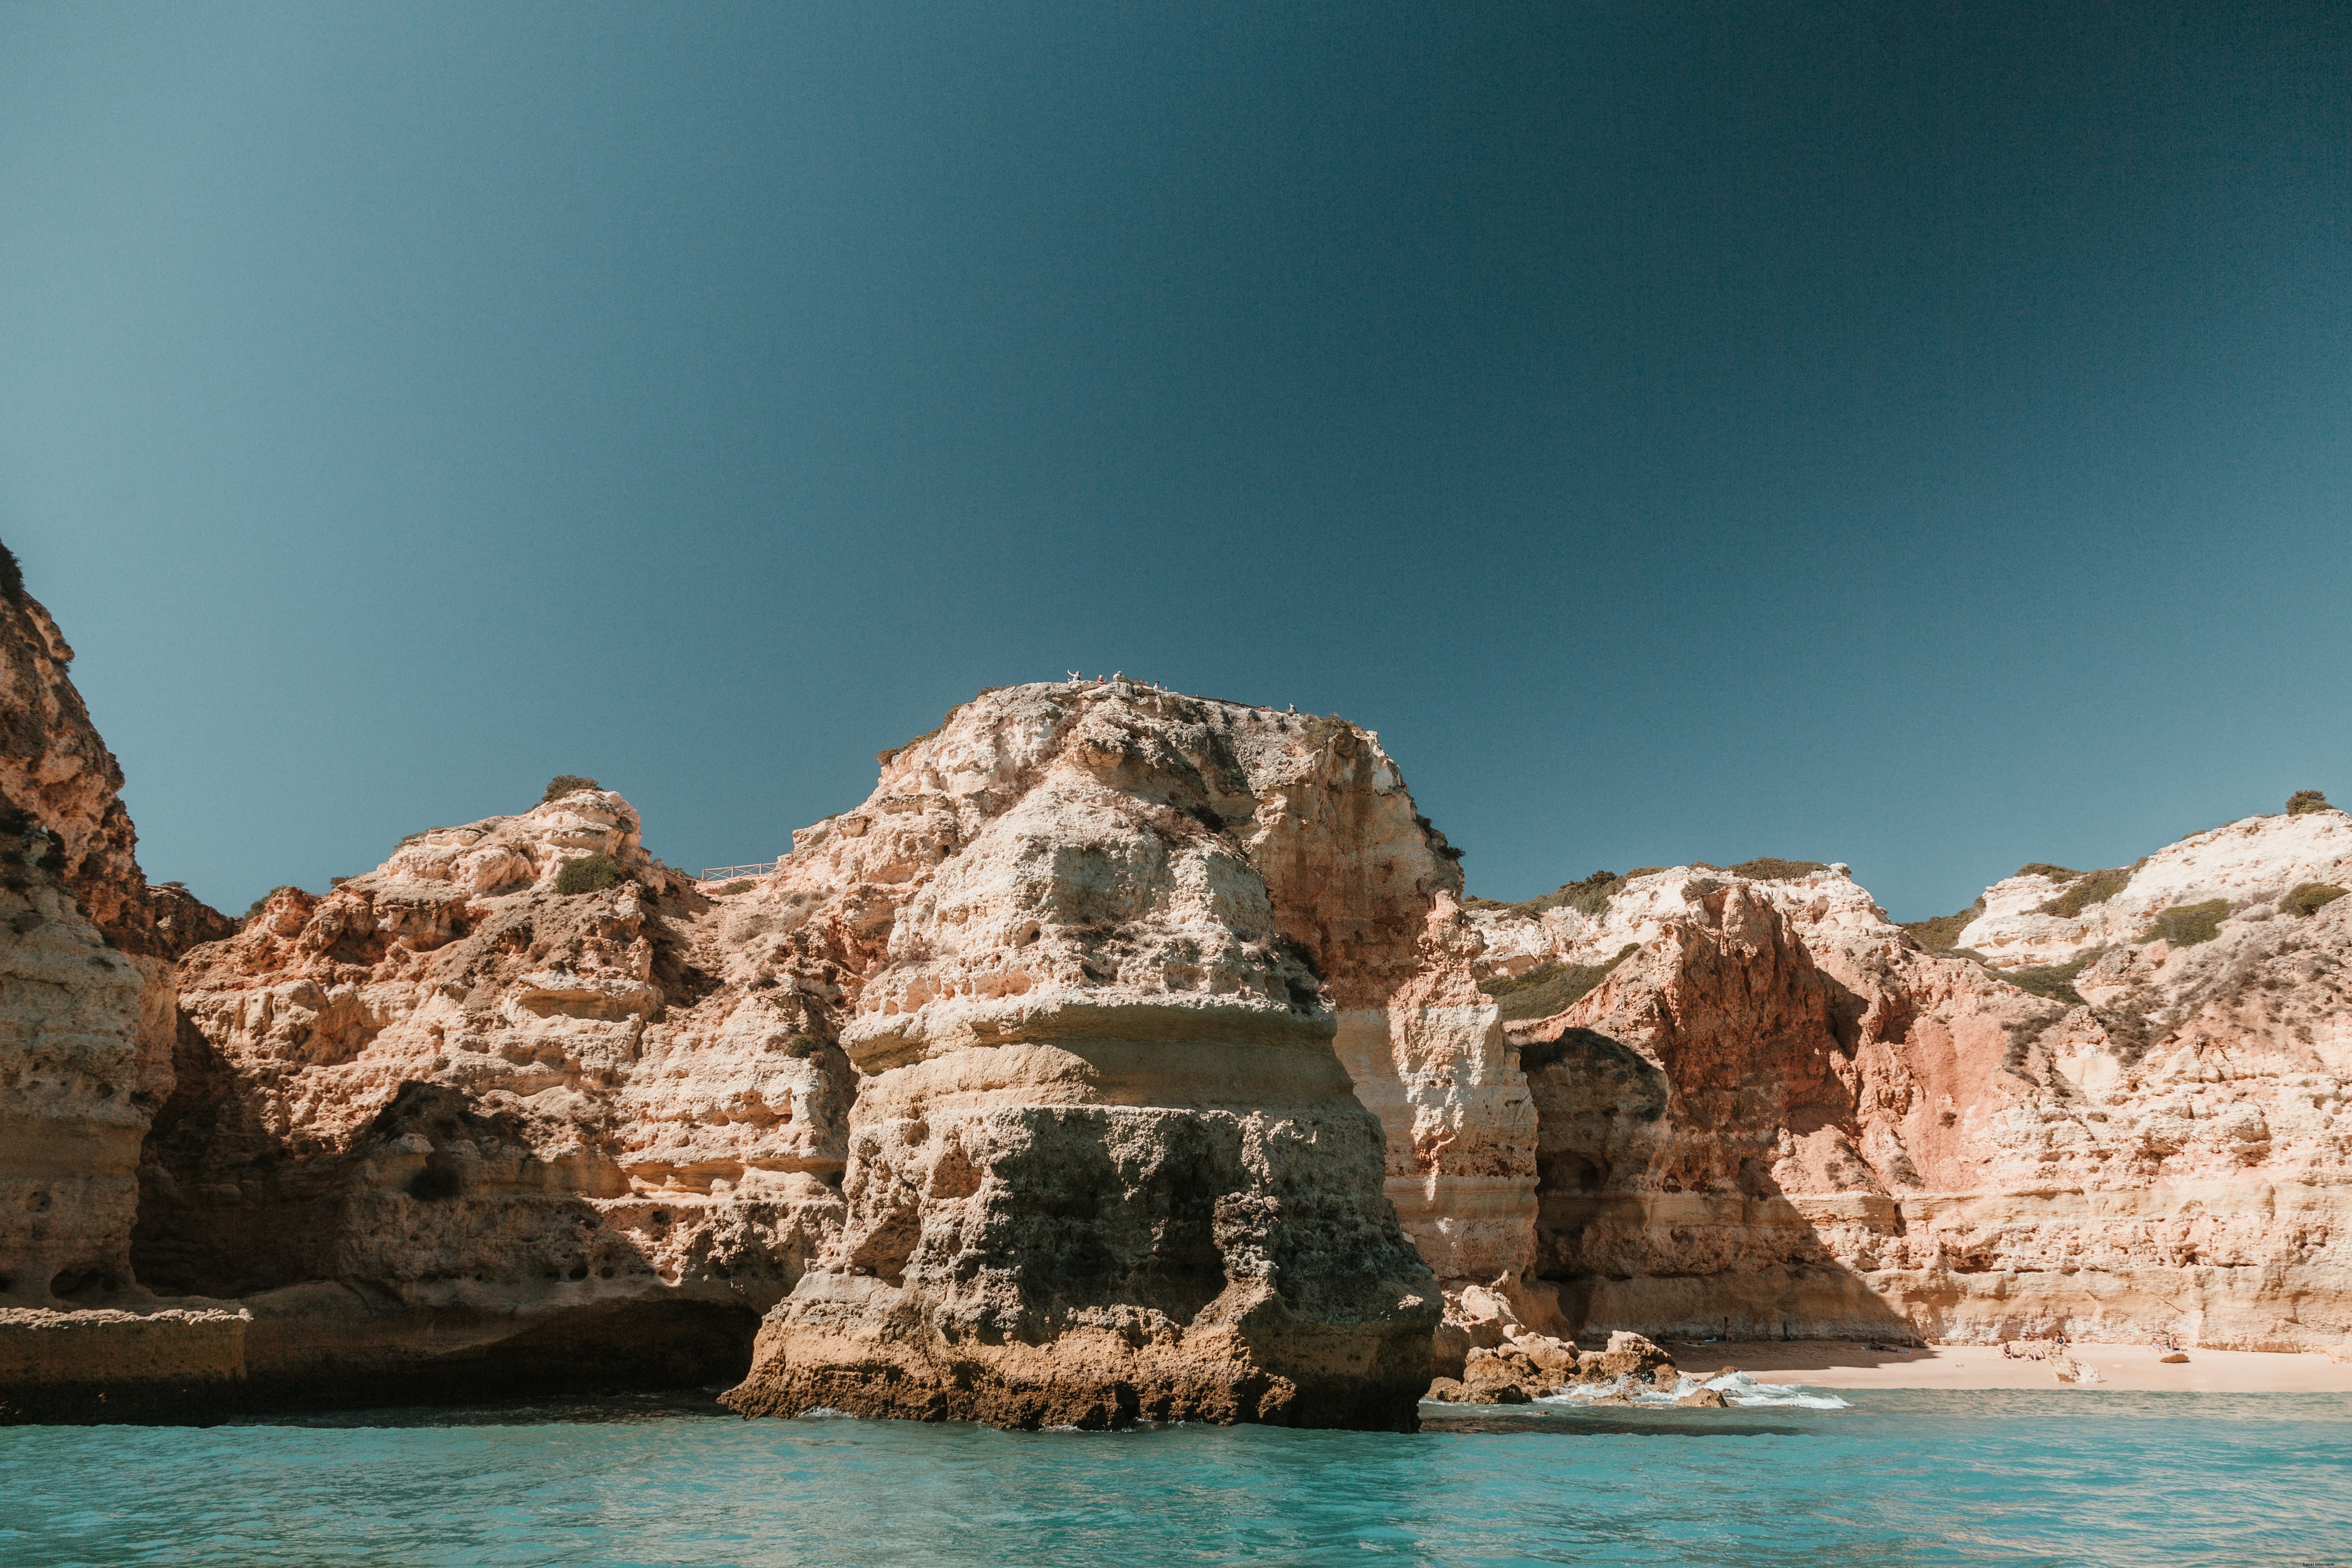 フィギュアライン岩の露頭が海に突き出ている写真